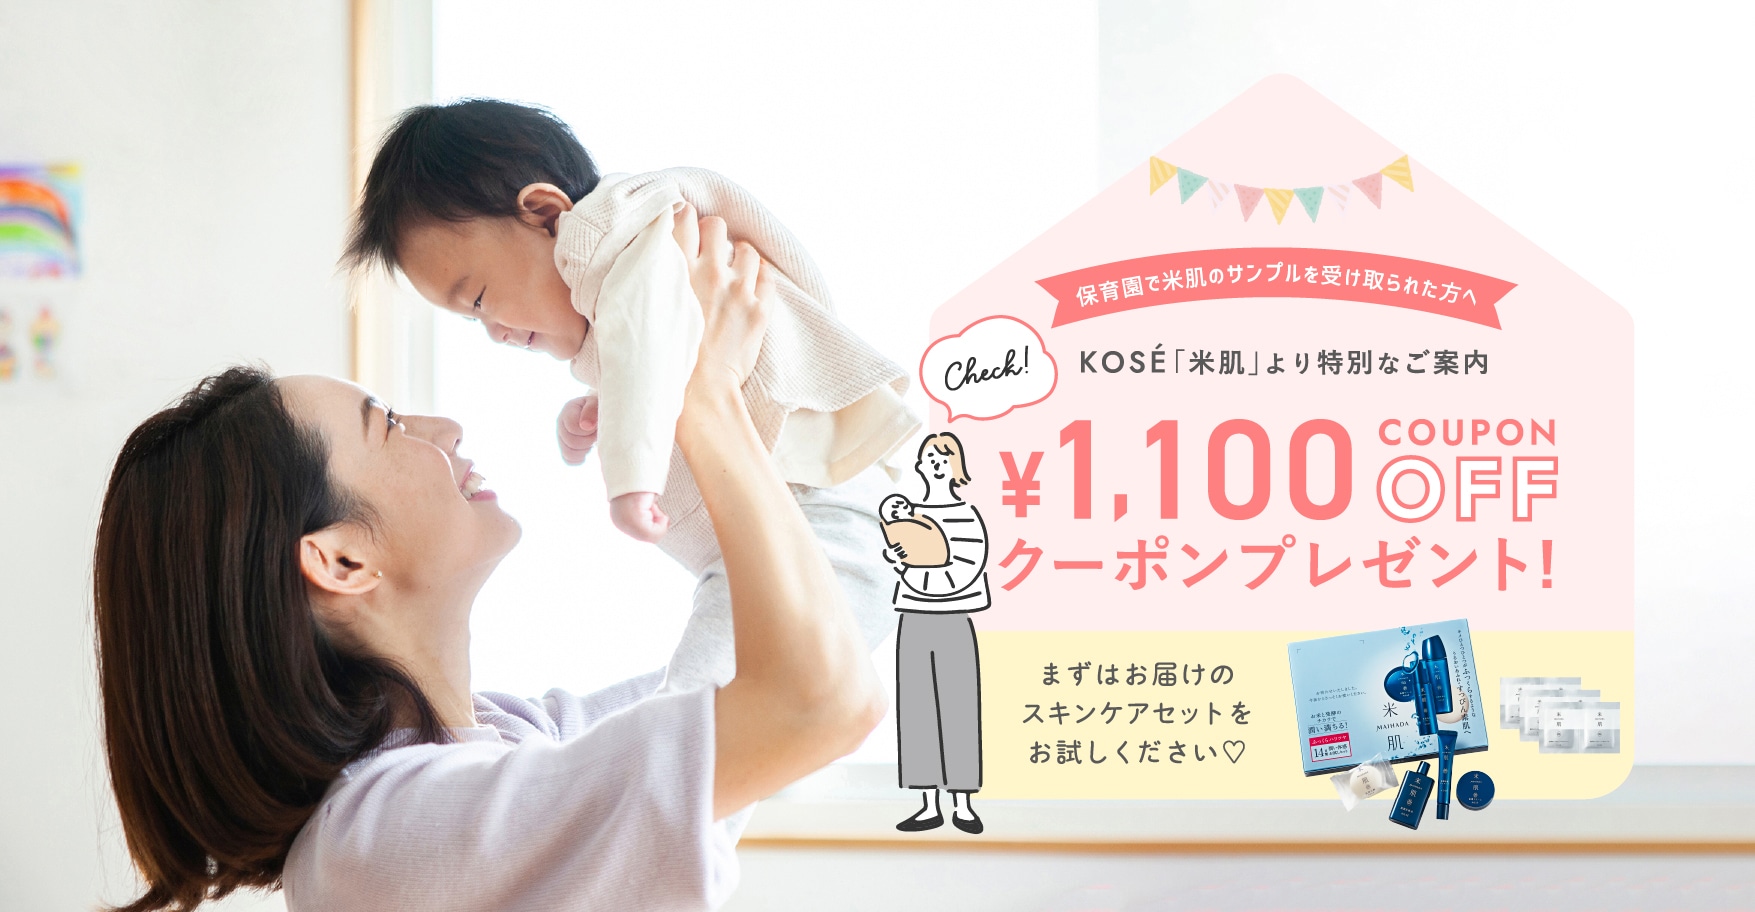 保育園で米肌のサンプルを受け取られた方へ KOSÉ「米肌」より特別なご案内 ¥1,100OFFクーポンプレゼント! まずはお届けのスキンケアセットをお試しください♡